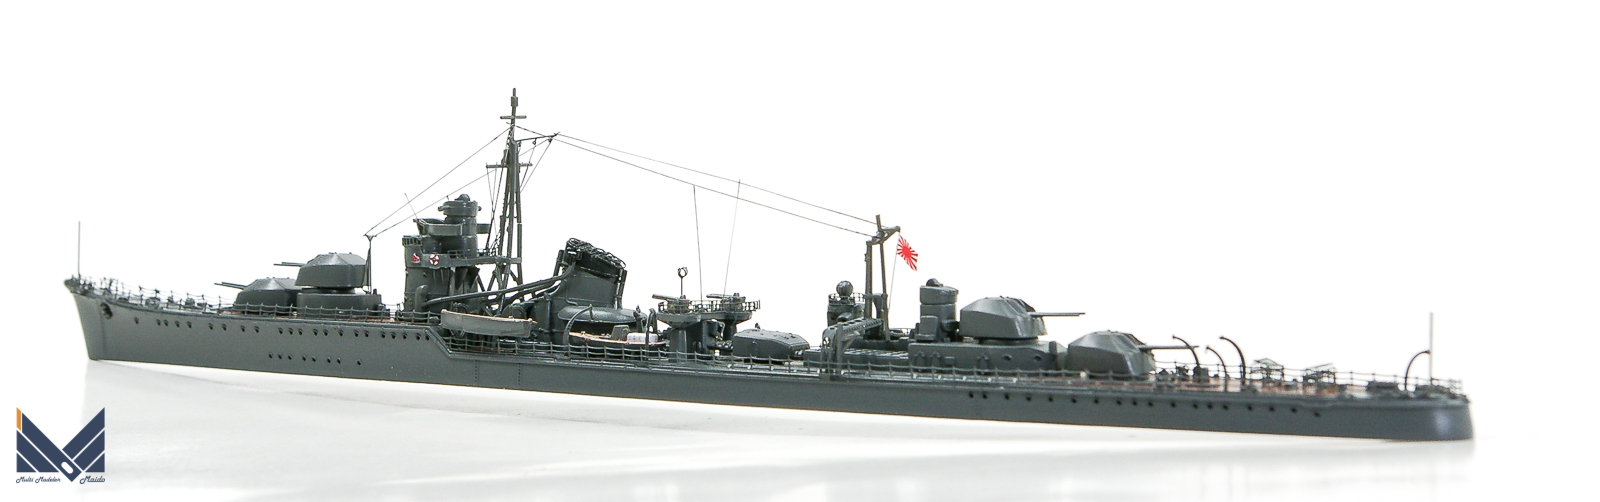 フジミ 1/700 日本海軍駆逐艦「秋月」 完成品 AKIZUKI FUJIMI - 模型工房M